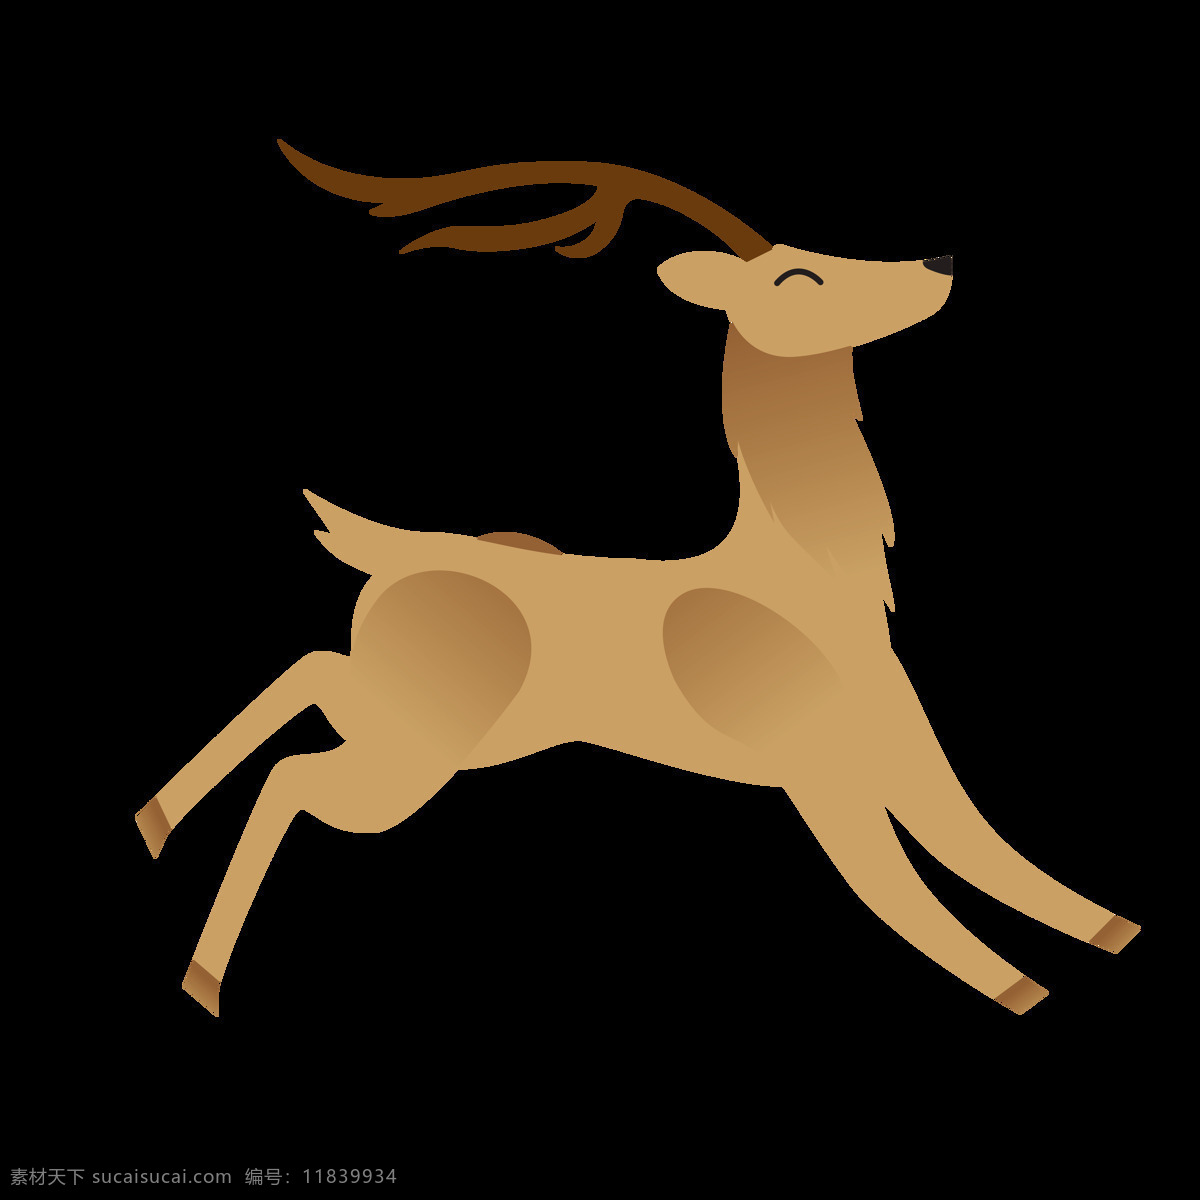 卡通鹿 鹿图片 透明底鹿 动物 卡通 梅花鹿 麋鹿图片 png图片 鹿茸 鹿角